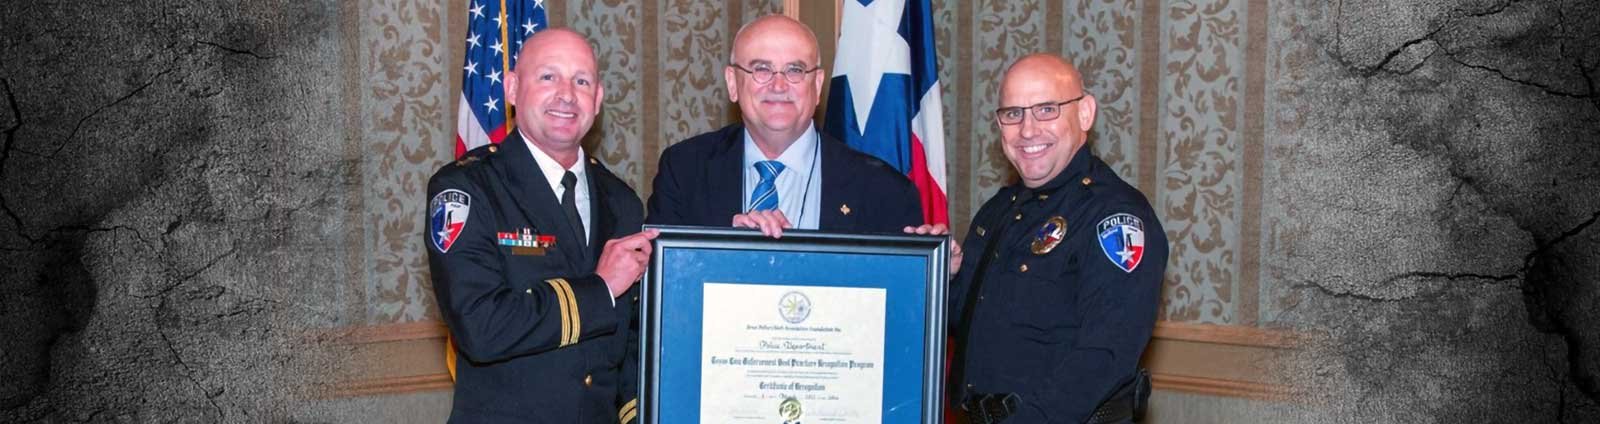 Three men in uniform holding award from TPCA Recognition Program